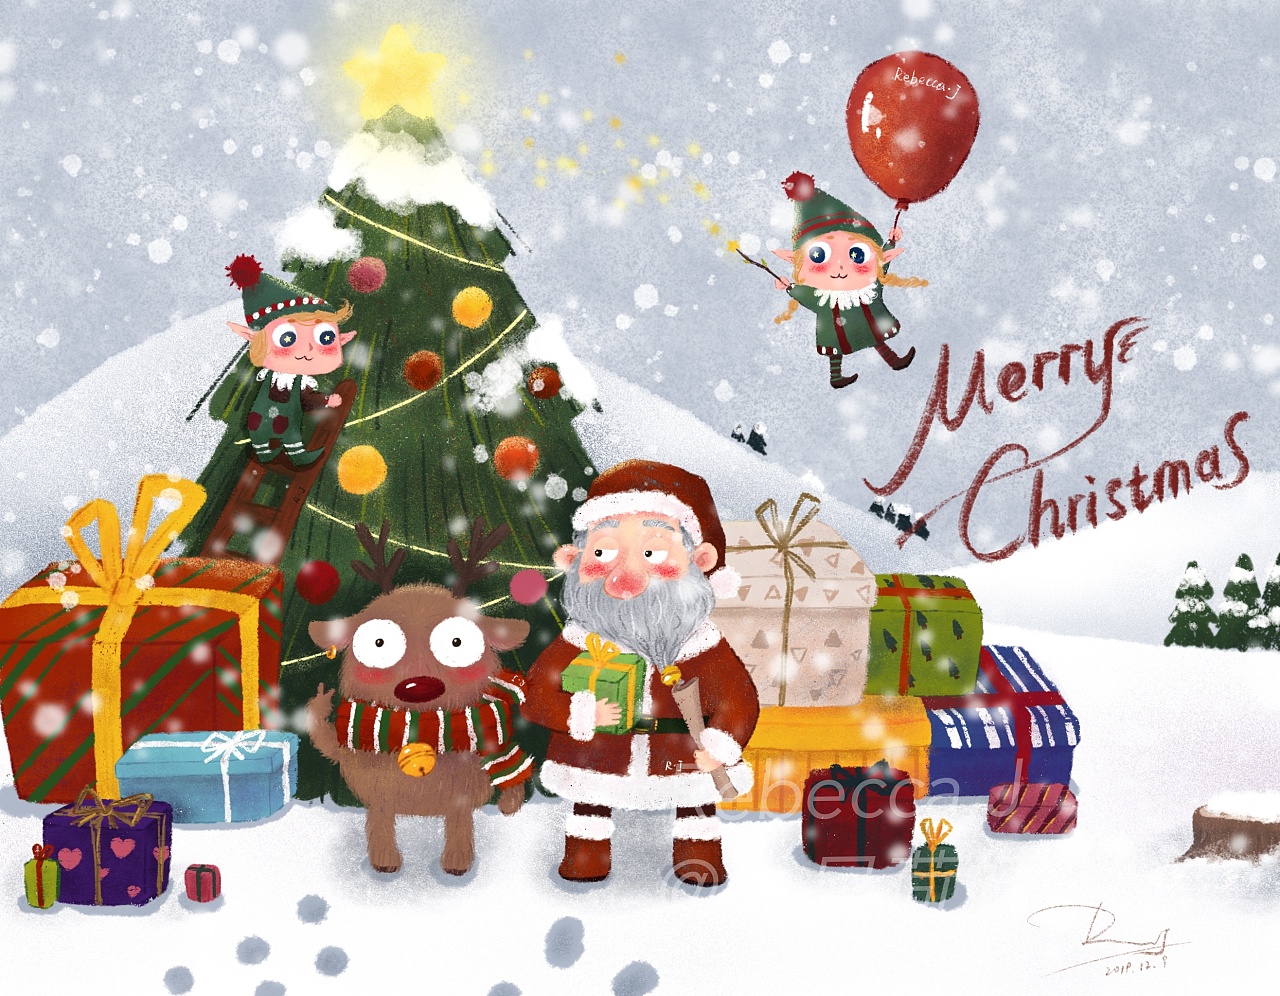 彩色塑泥圣诞树 库存照片. 图片 包括有 装饰品, 新建, 乐趣, 玩具, 结构树, 圣诞节, 图象, 杉木 - 61855634